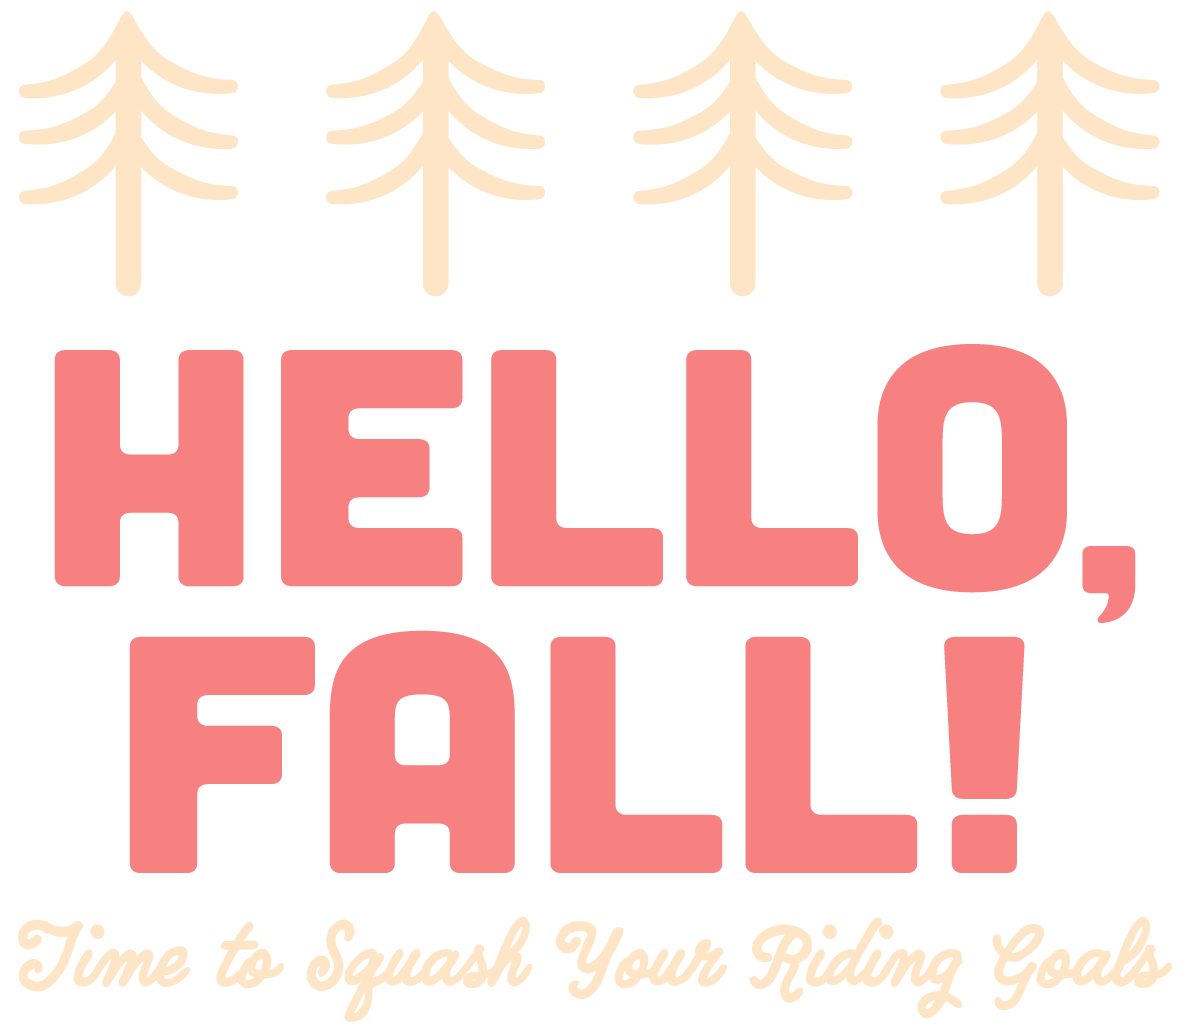 Hello, Fall!